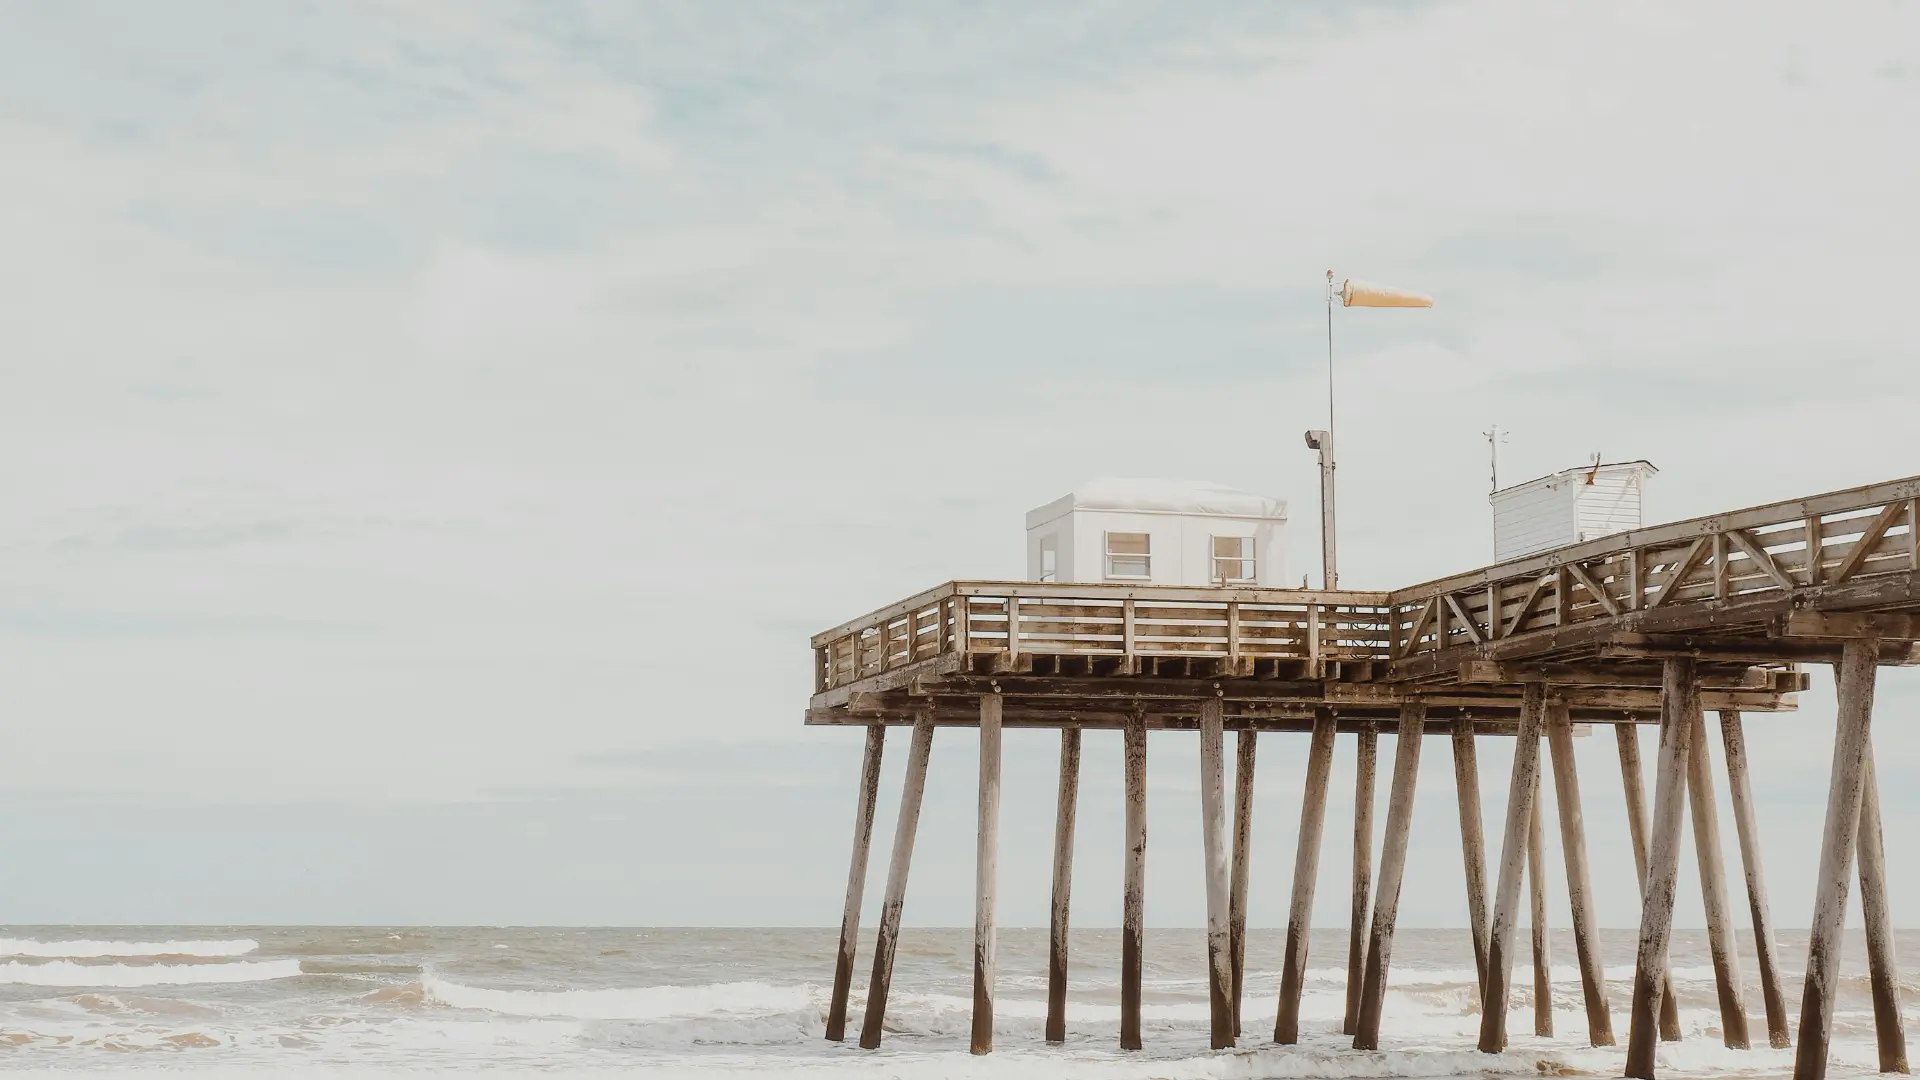 A wooden pier extending over the ocean in Ocean City